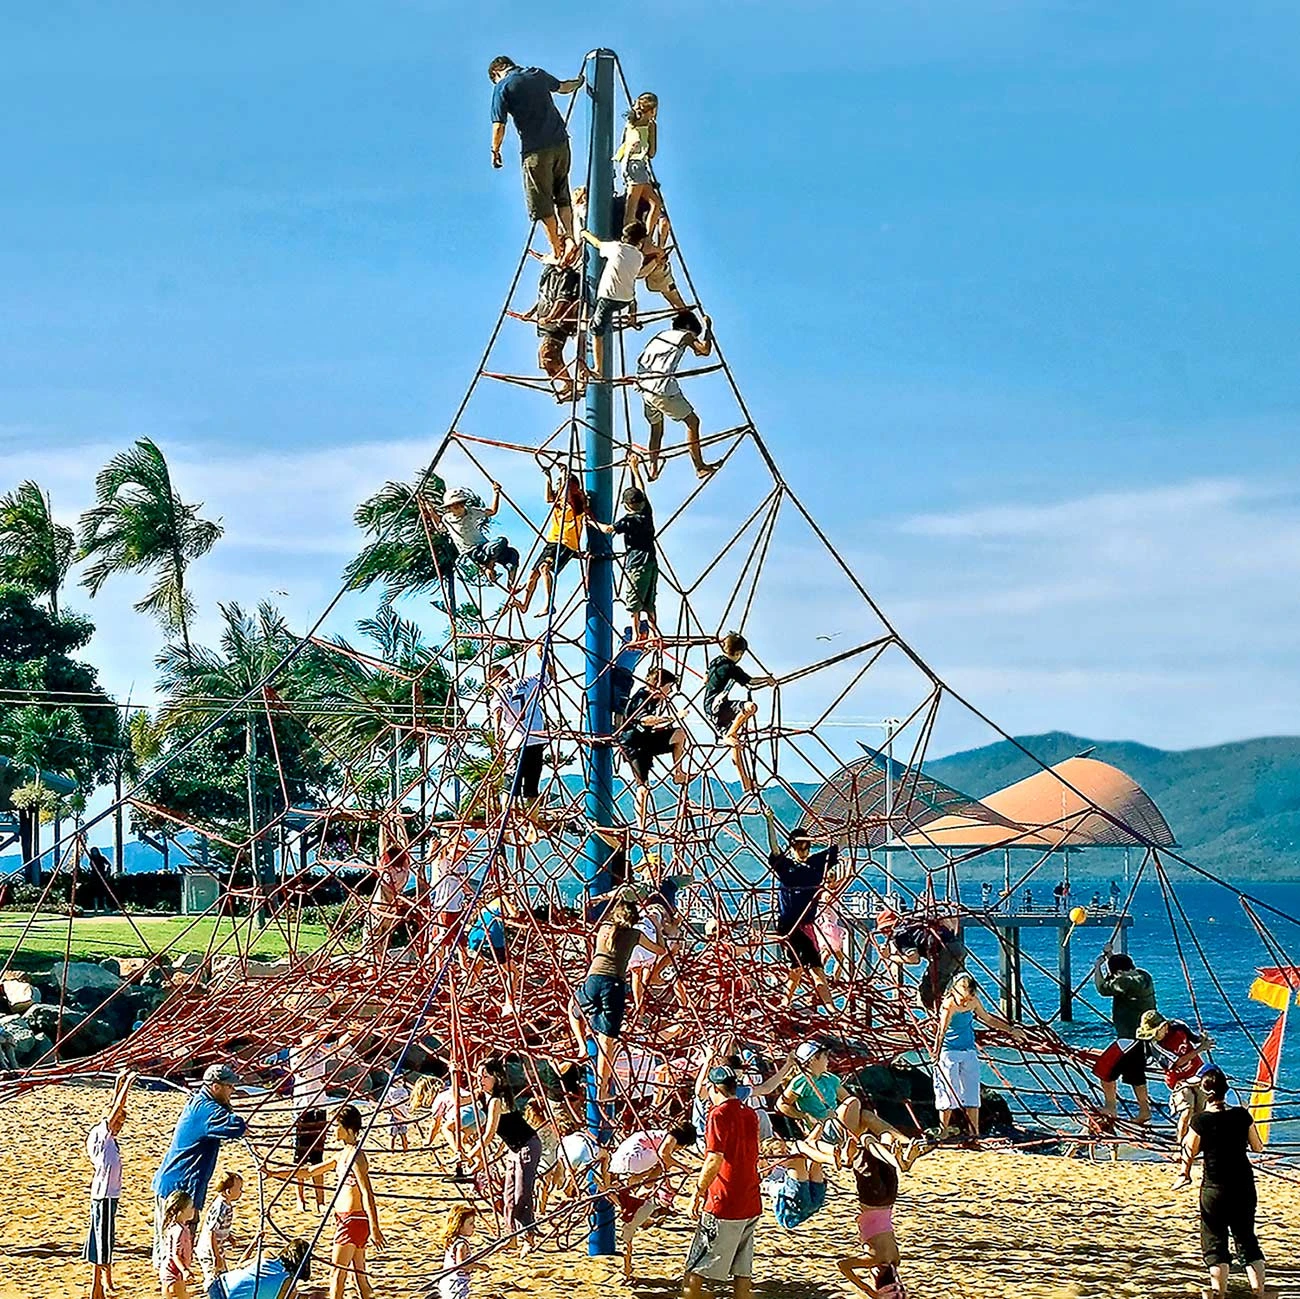 børn, der leger på en stor pyramide med et stort reb, der klatrer på en legeplads